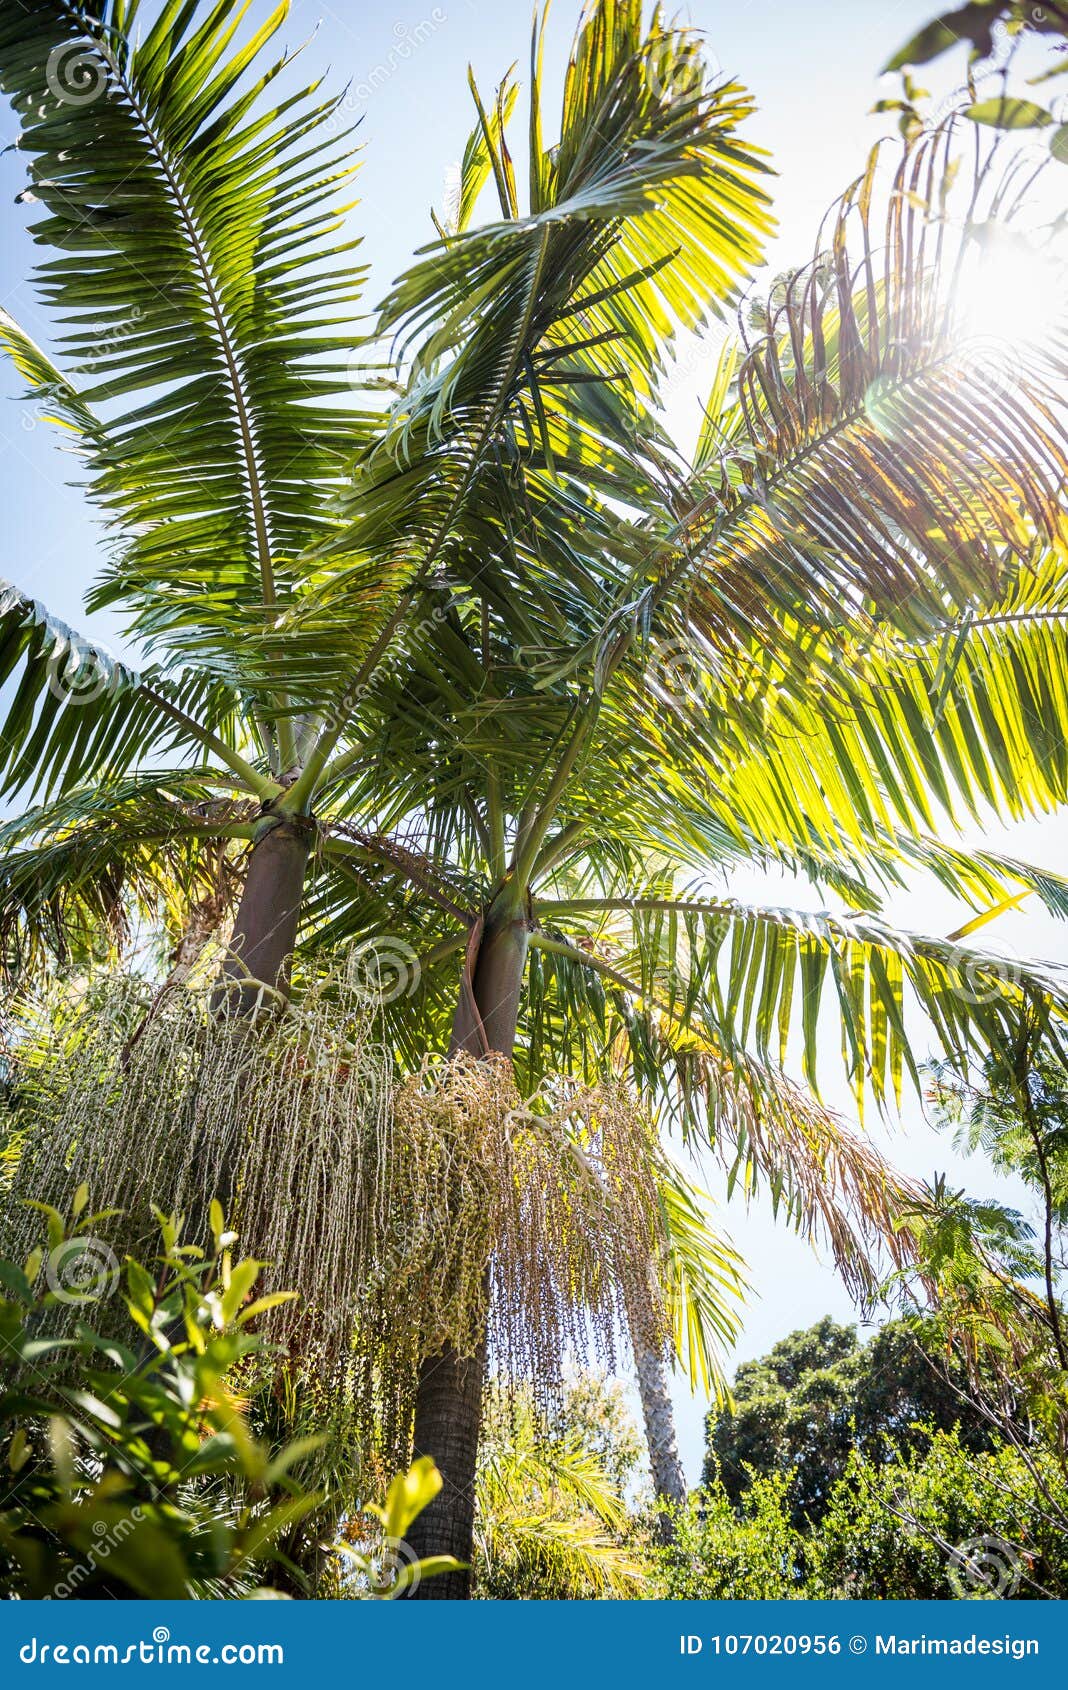 jardin botanico with palm tree